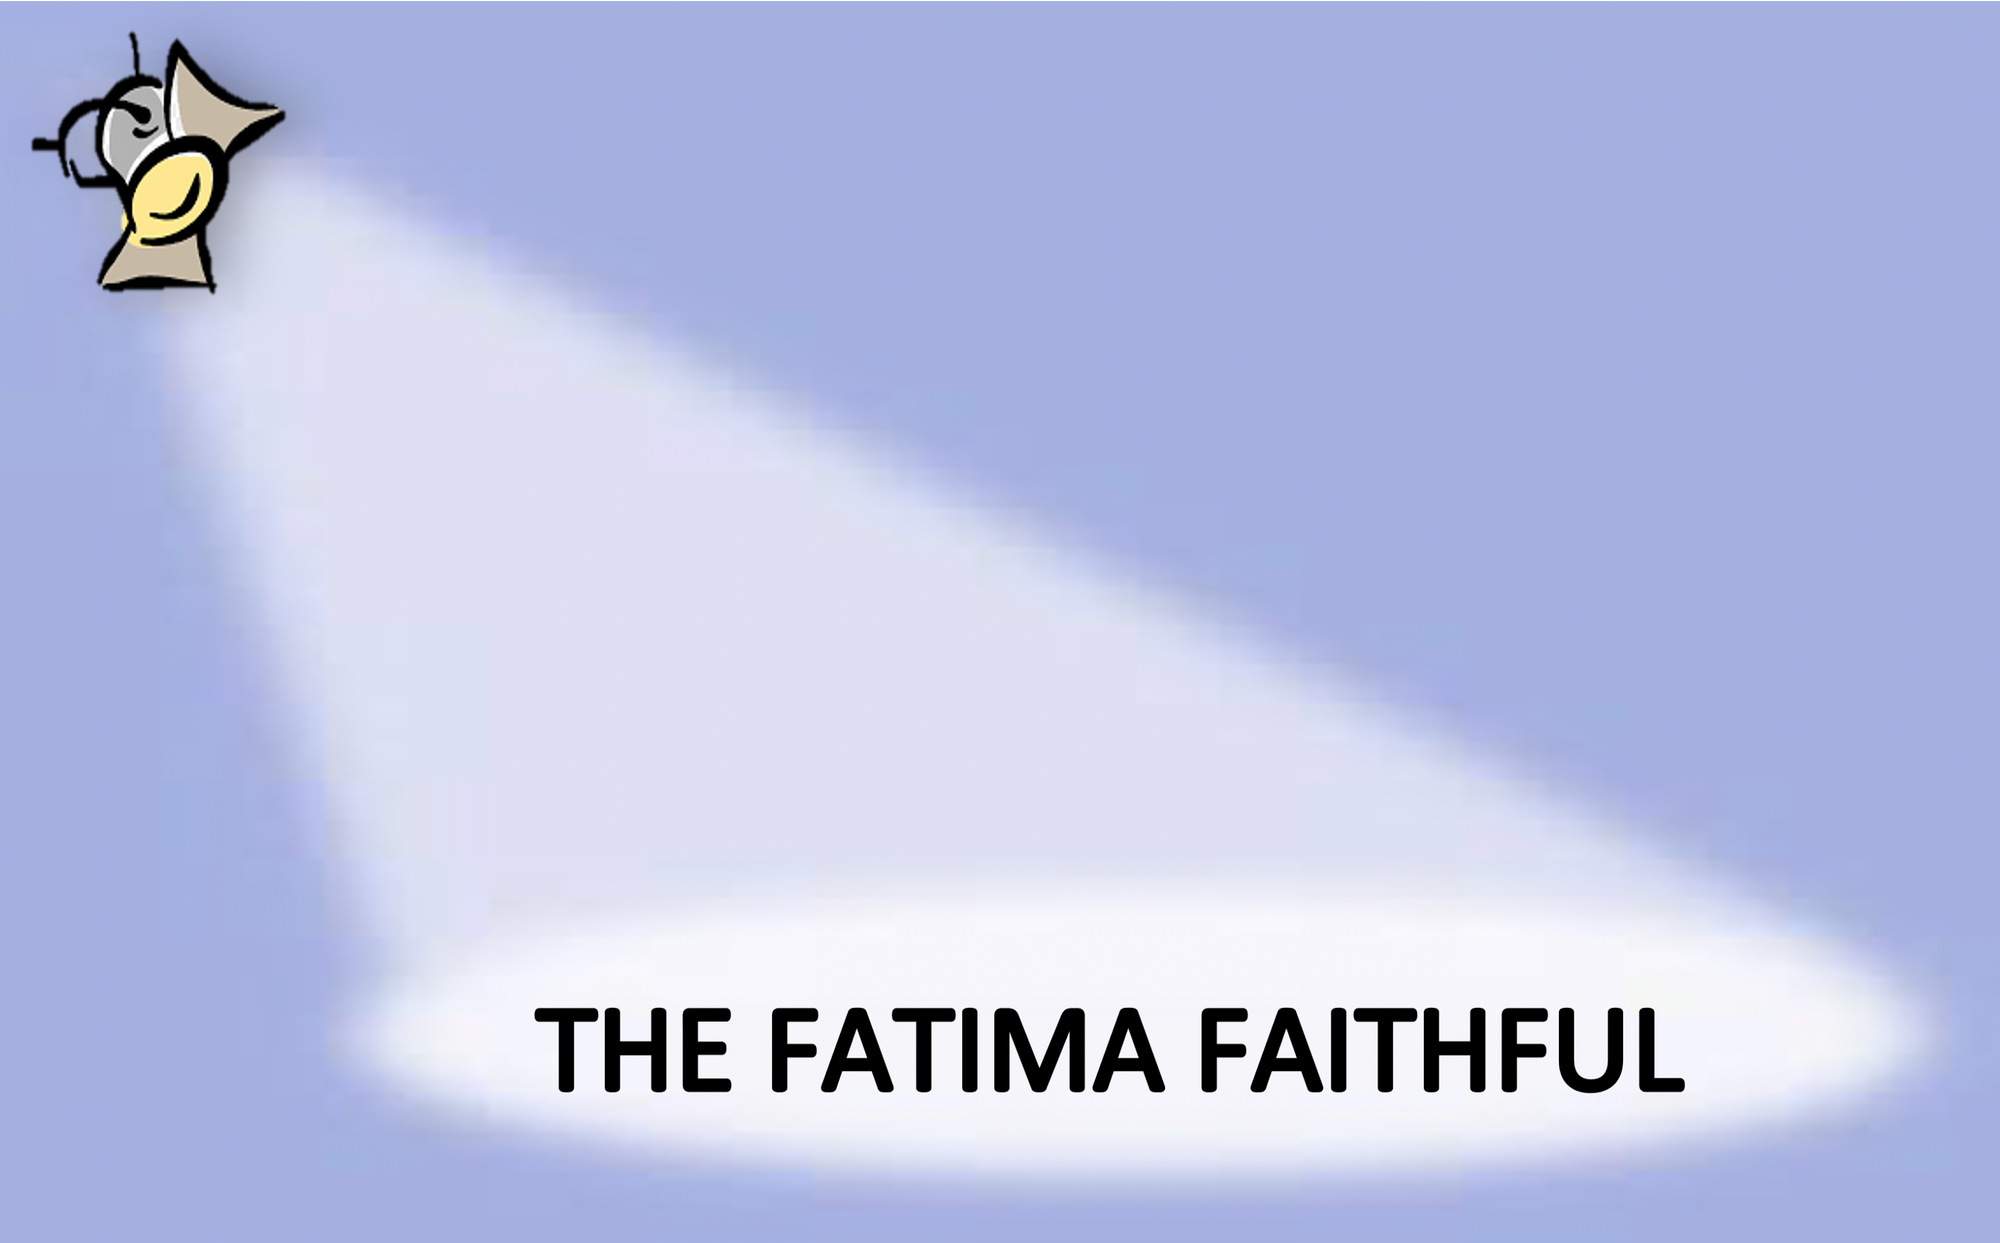 The Fatima Faithful for April 2022